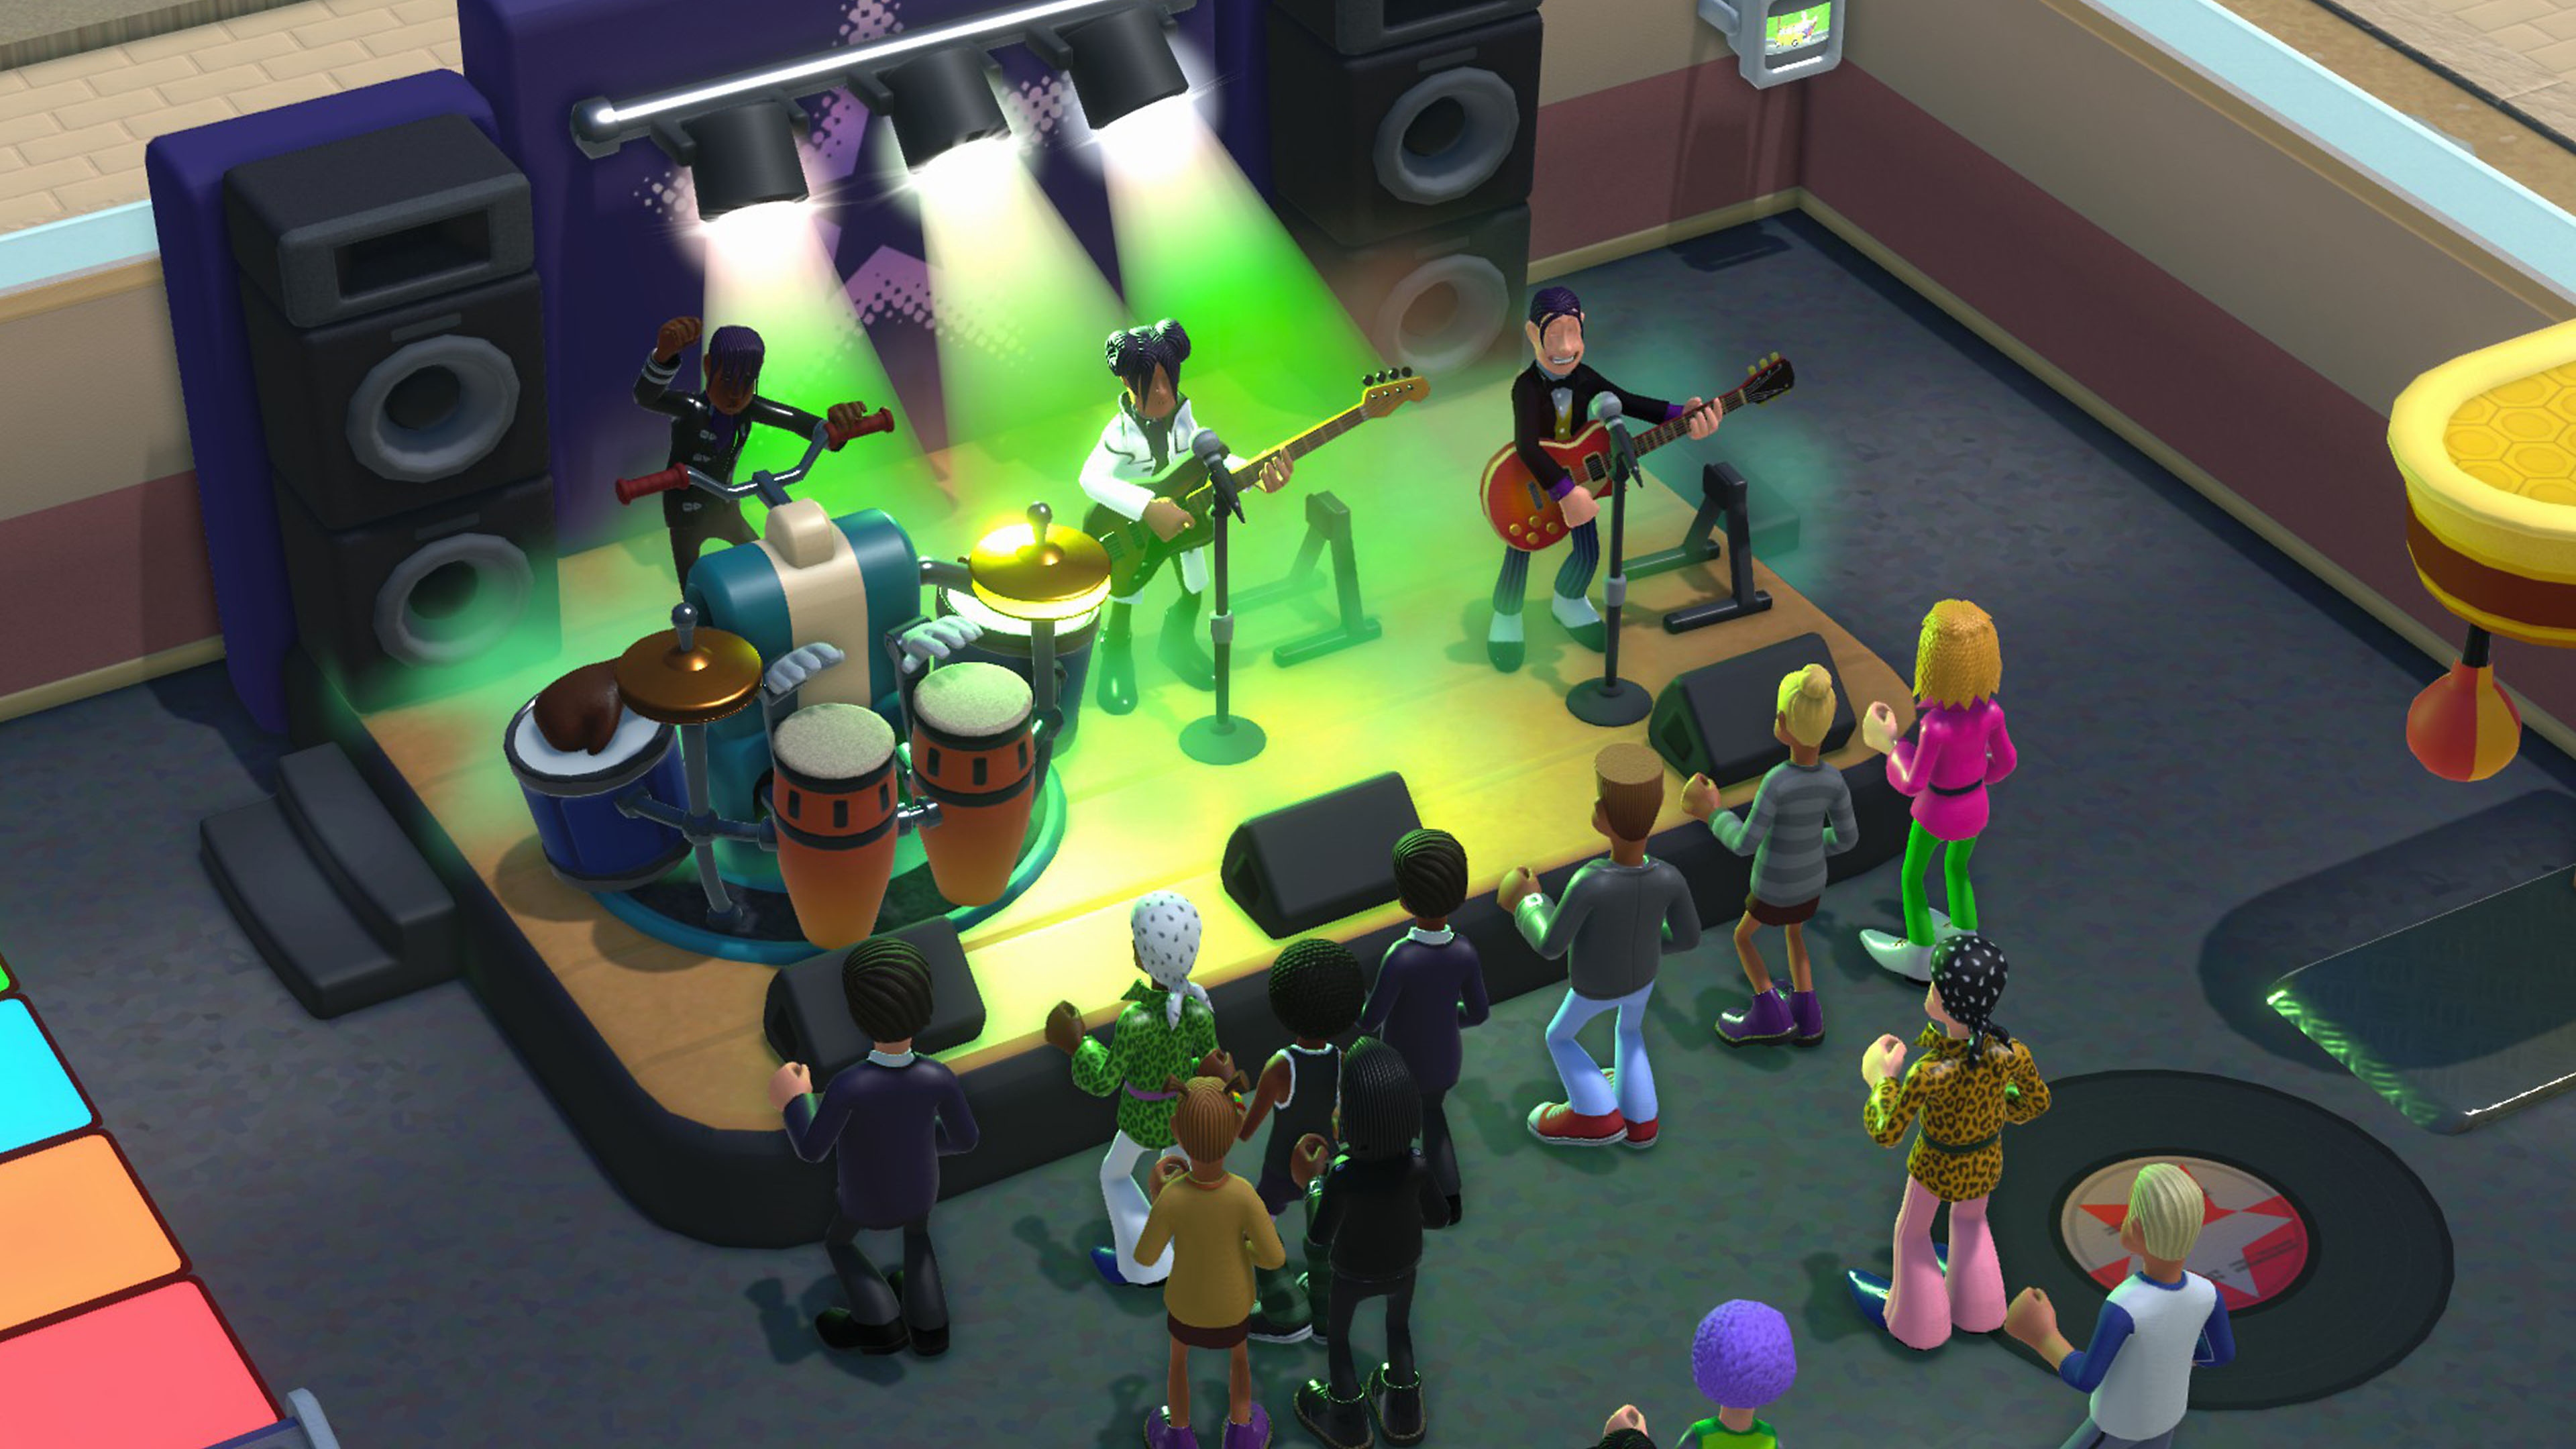 Istantanea della schermata di Two Point Campus che mostra una band che si esibisce su un palco